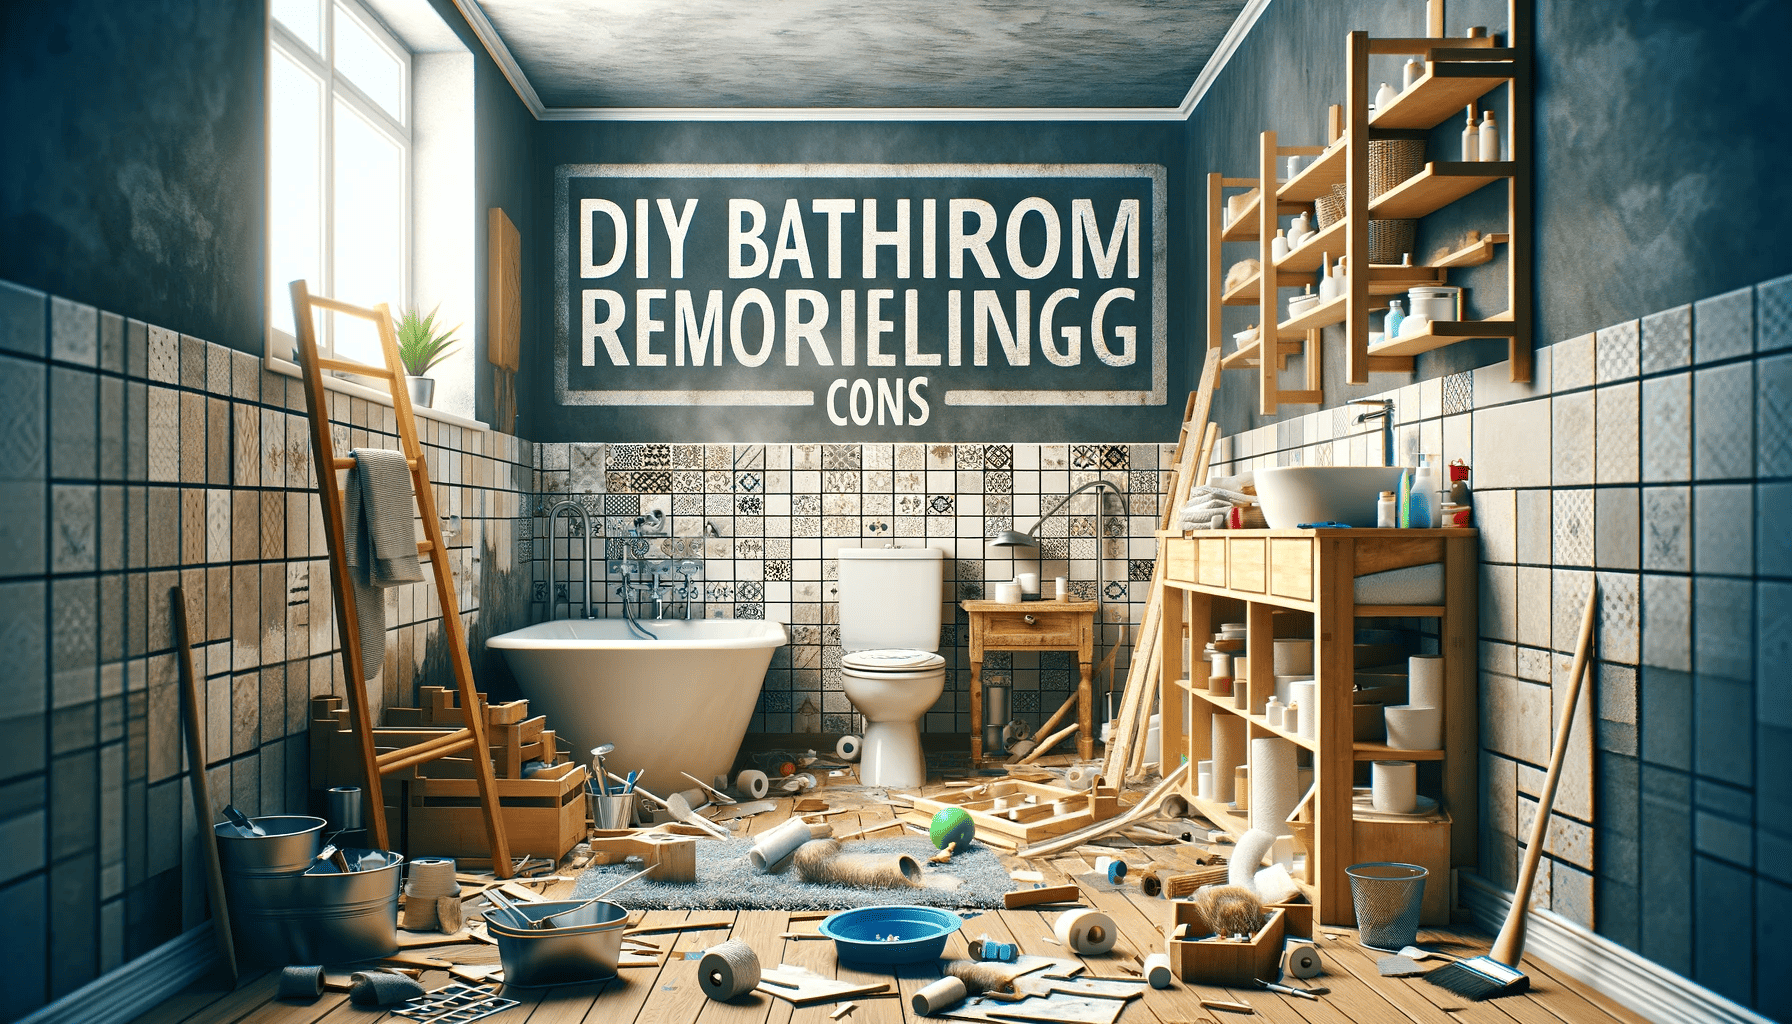 DIY Bathroom Remodeling Cons